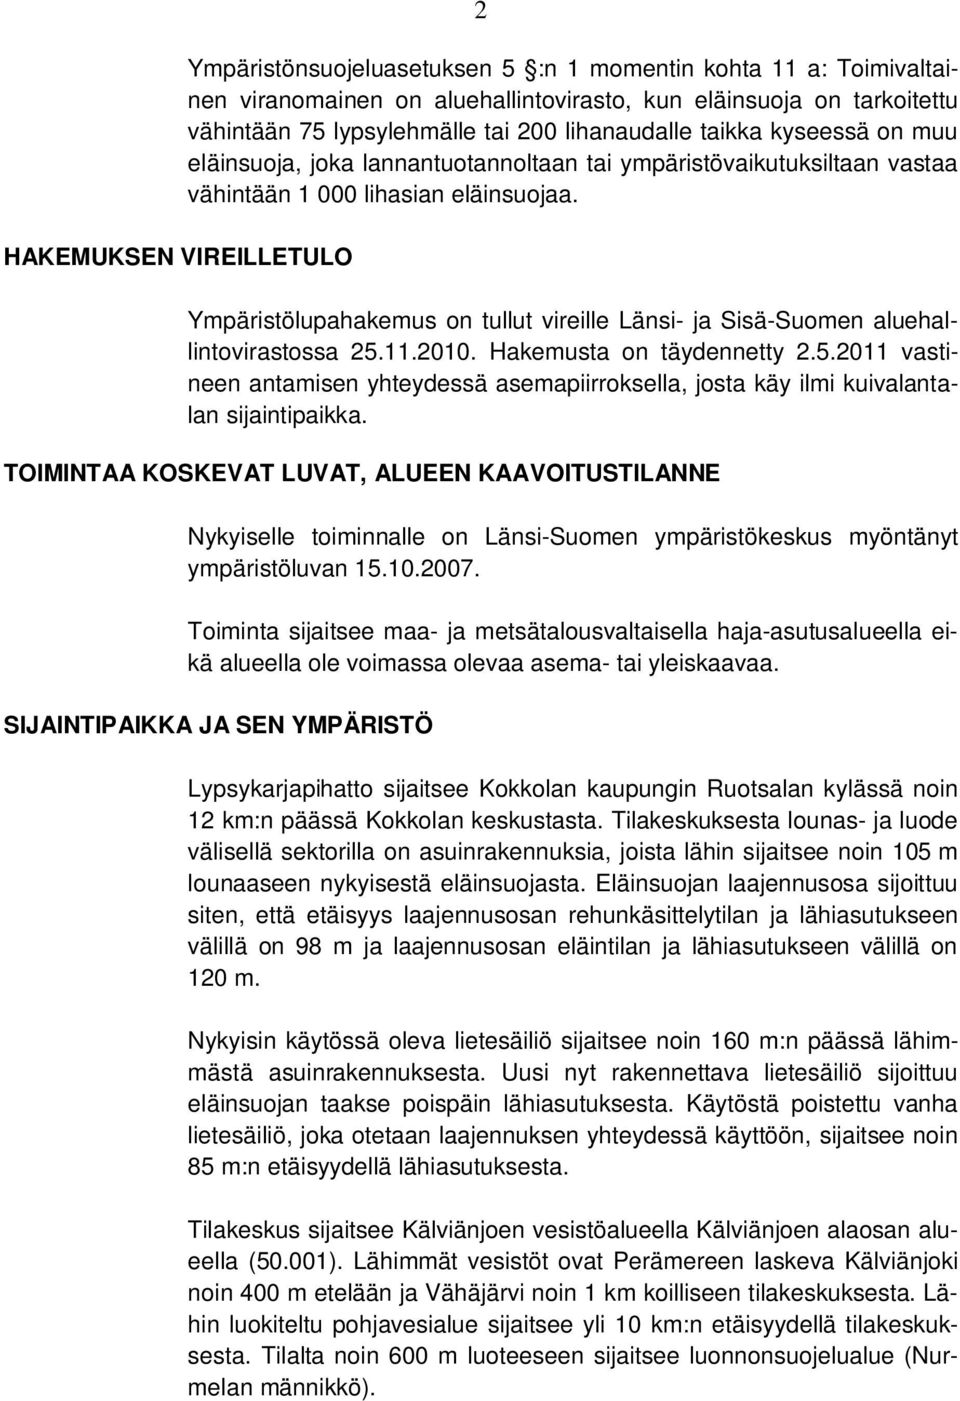 Ympäristölupahakemus on tullut vireille Länsi- ja Sisä-Suomen aluehallintovirastossa 25.11.2010. Hakemusta on täydennetty 2.5.2011 vastineen antamisen yhteydessä asemapiirroksella, josta käy ilmi kuivalantalan sijaintipaikka.